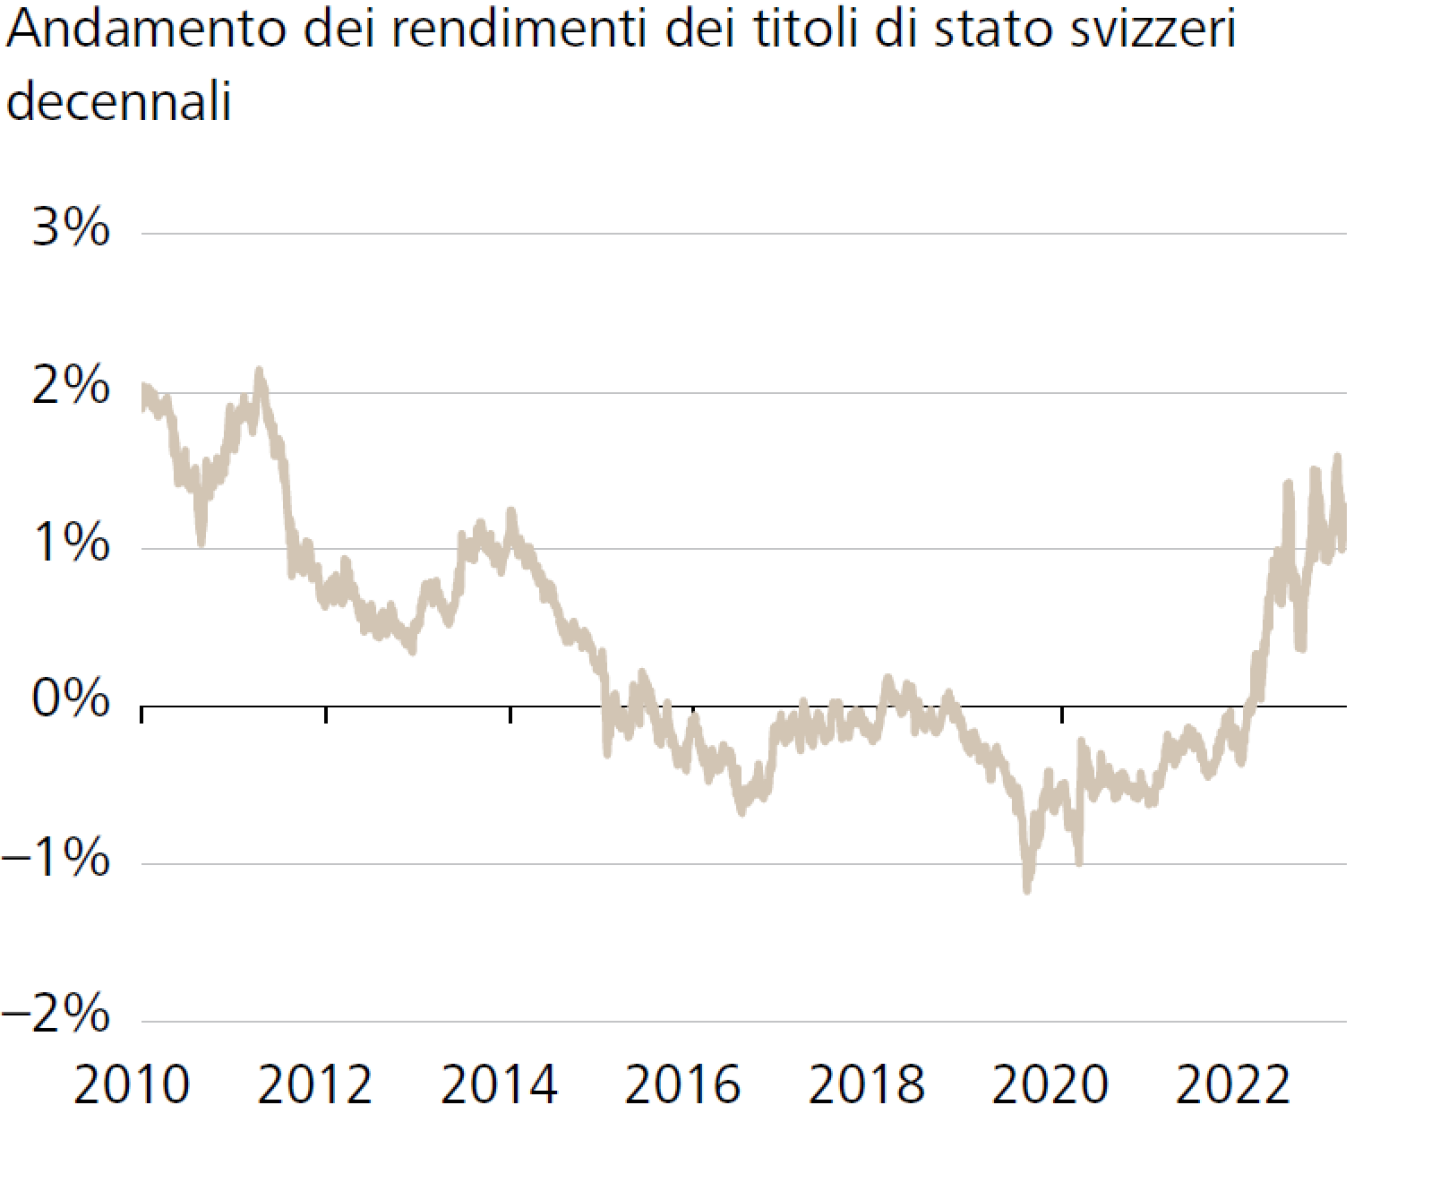 Andamento dei rendimenti dei titoli di stato svizzeri decennali